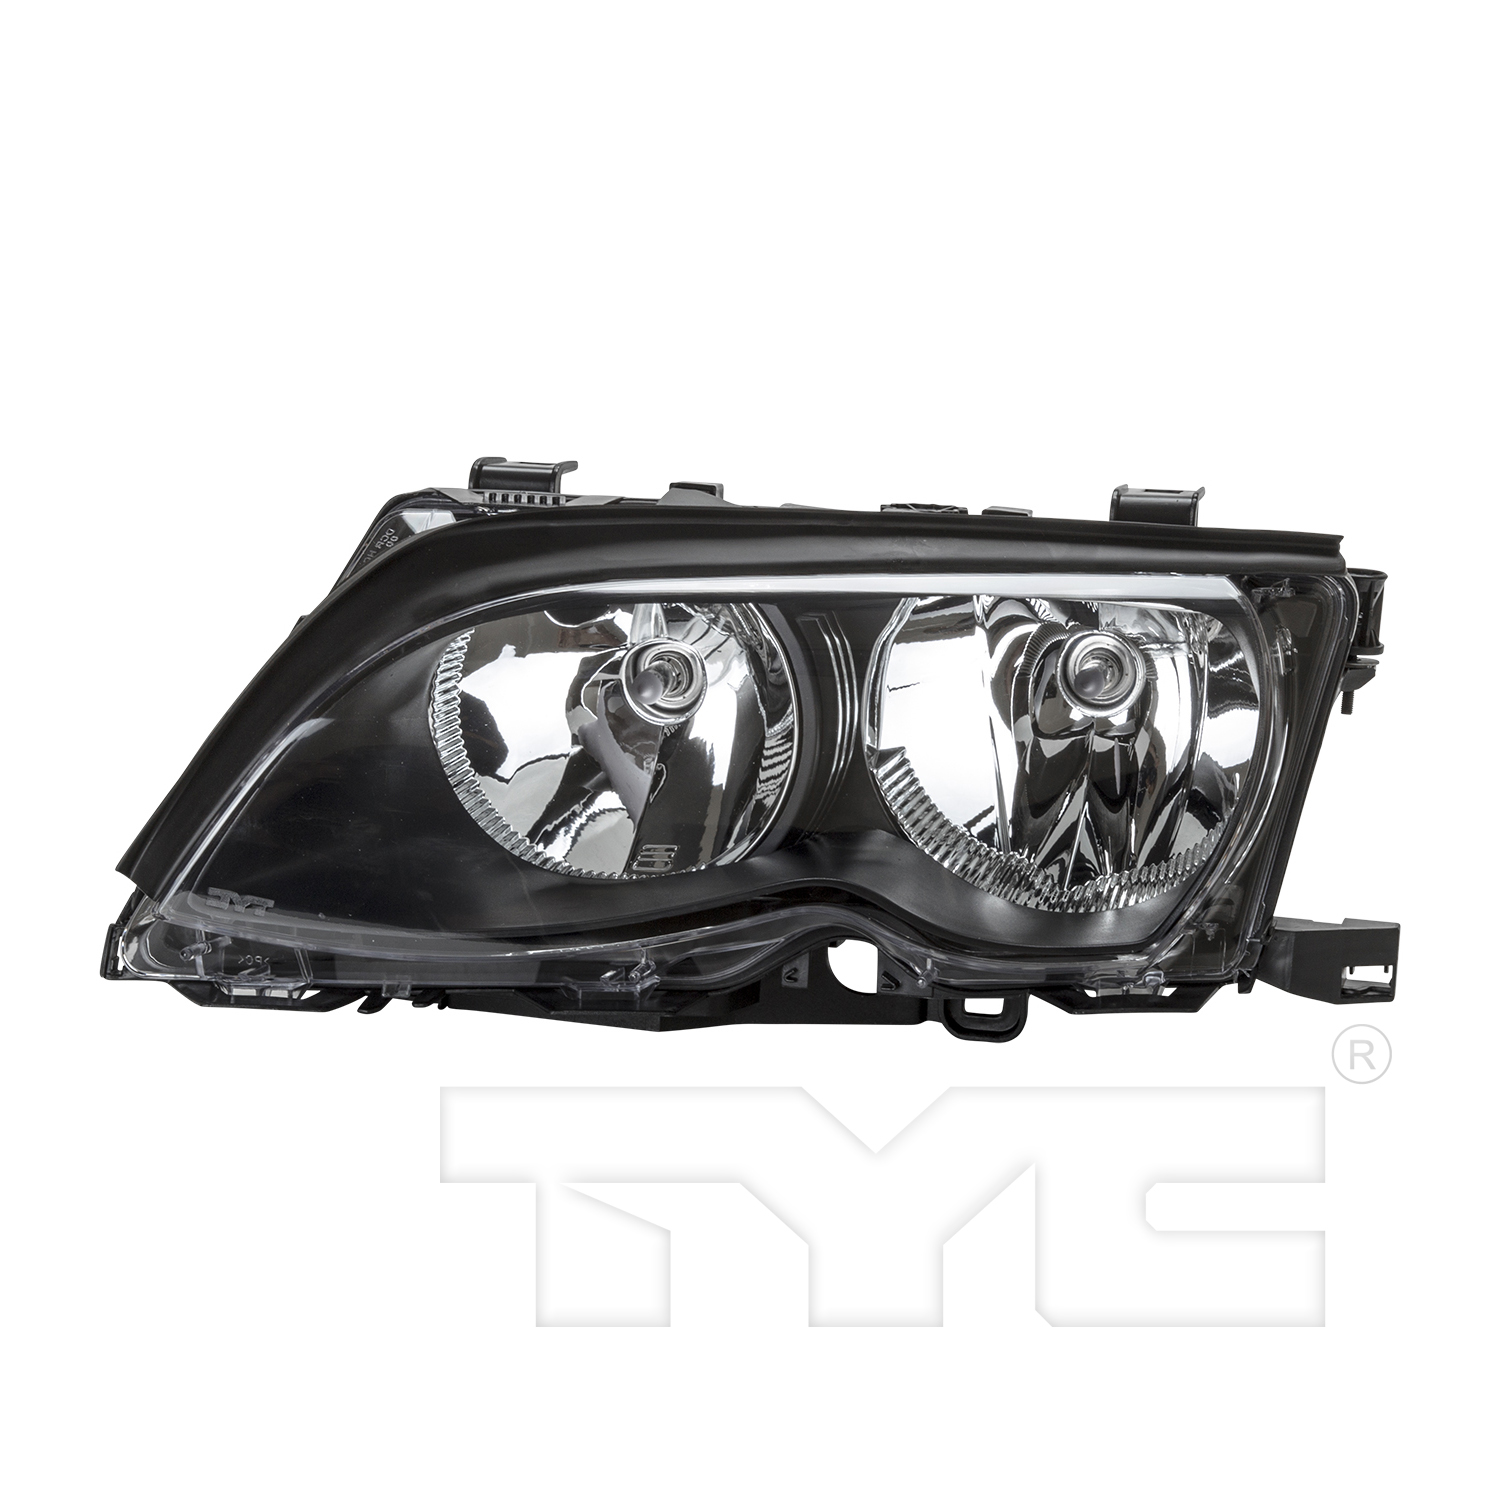 Aftermarket HEADLIGHTS for BMW - 325I, 325i,02-05,LT Headlamp assy composite